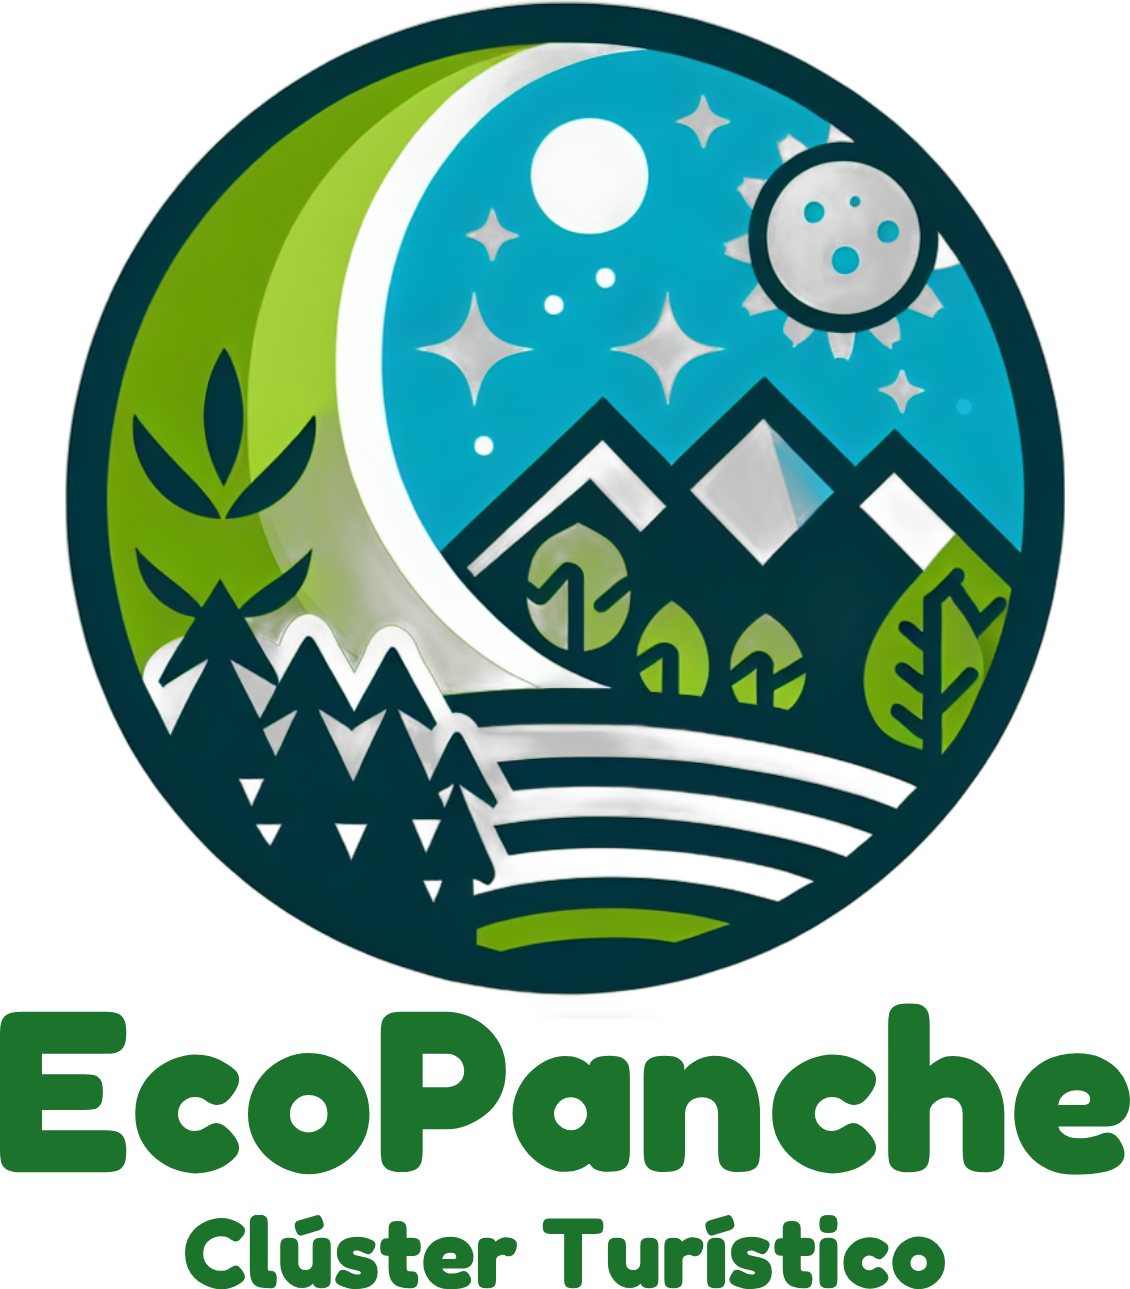 Clúster Turístico EcoPanche